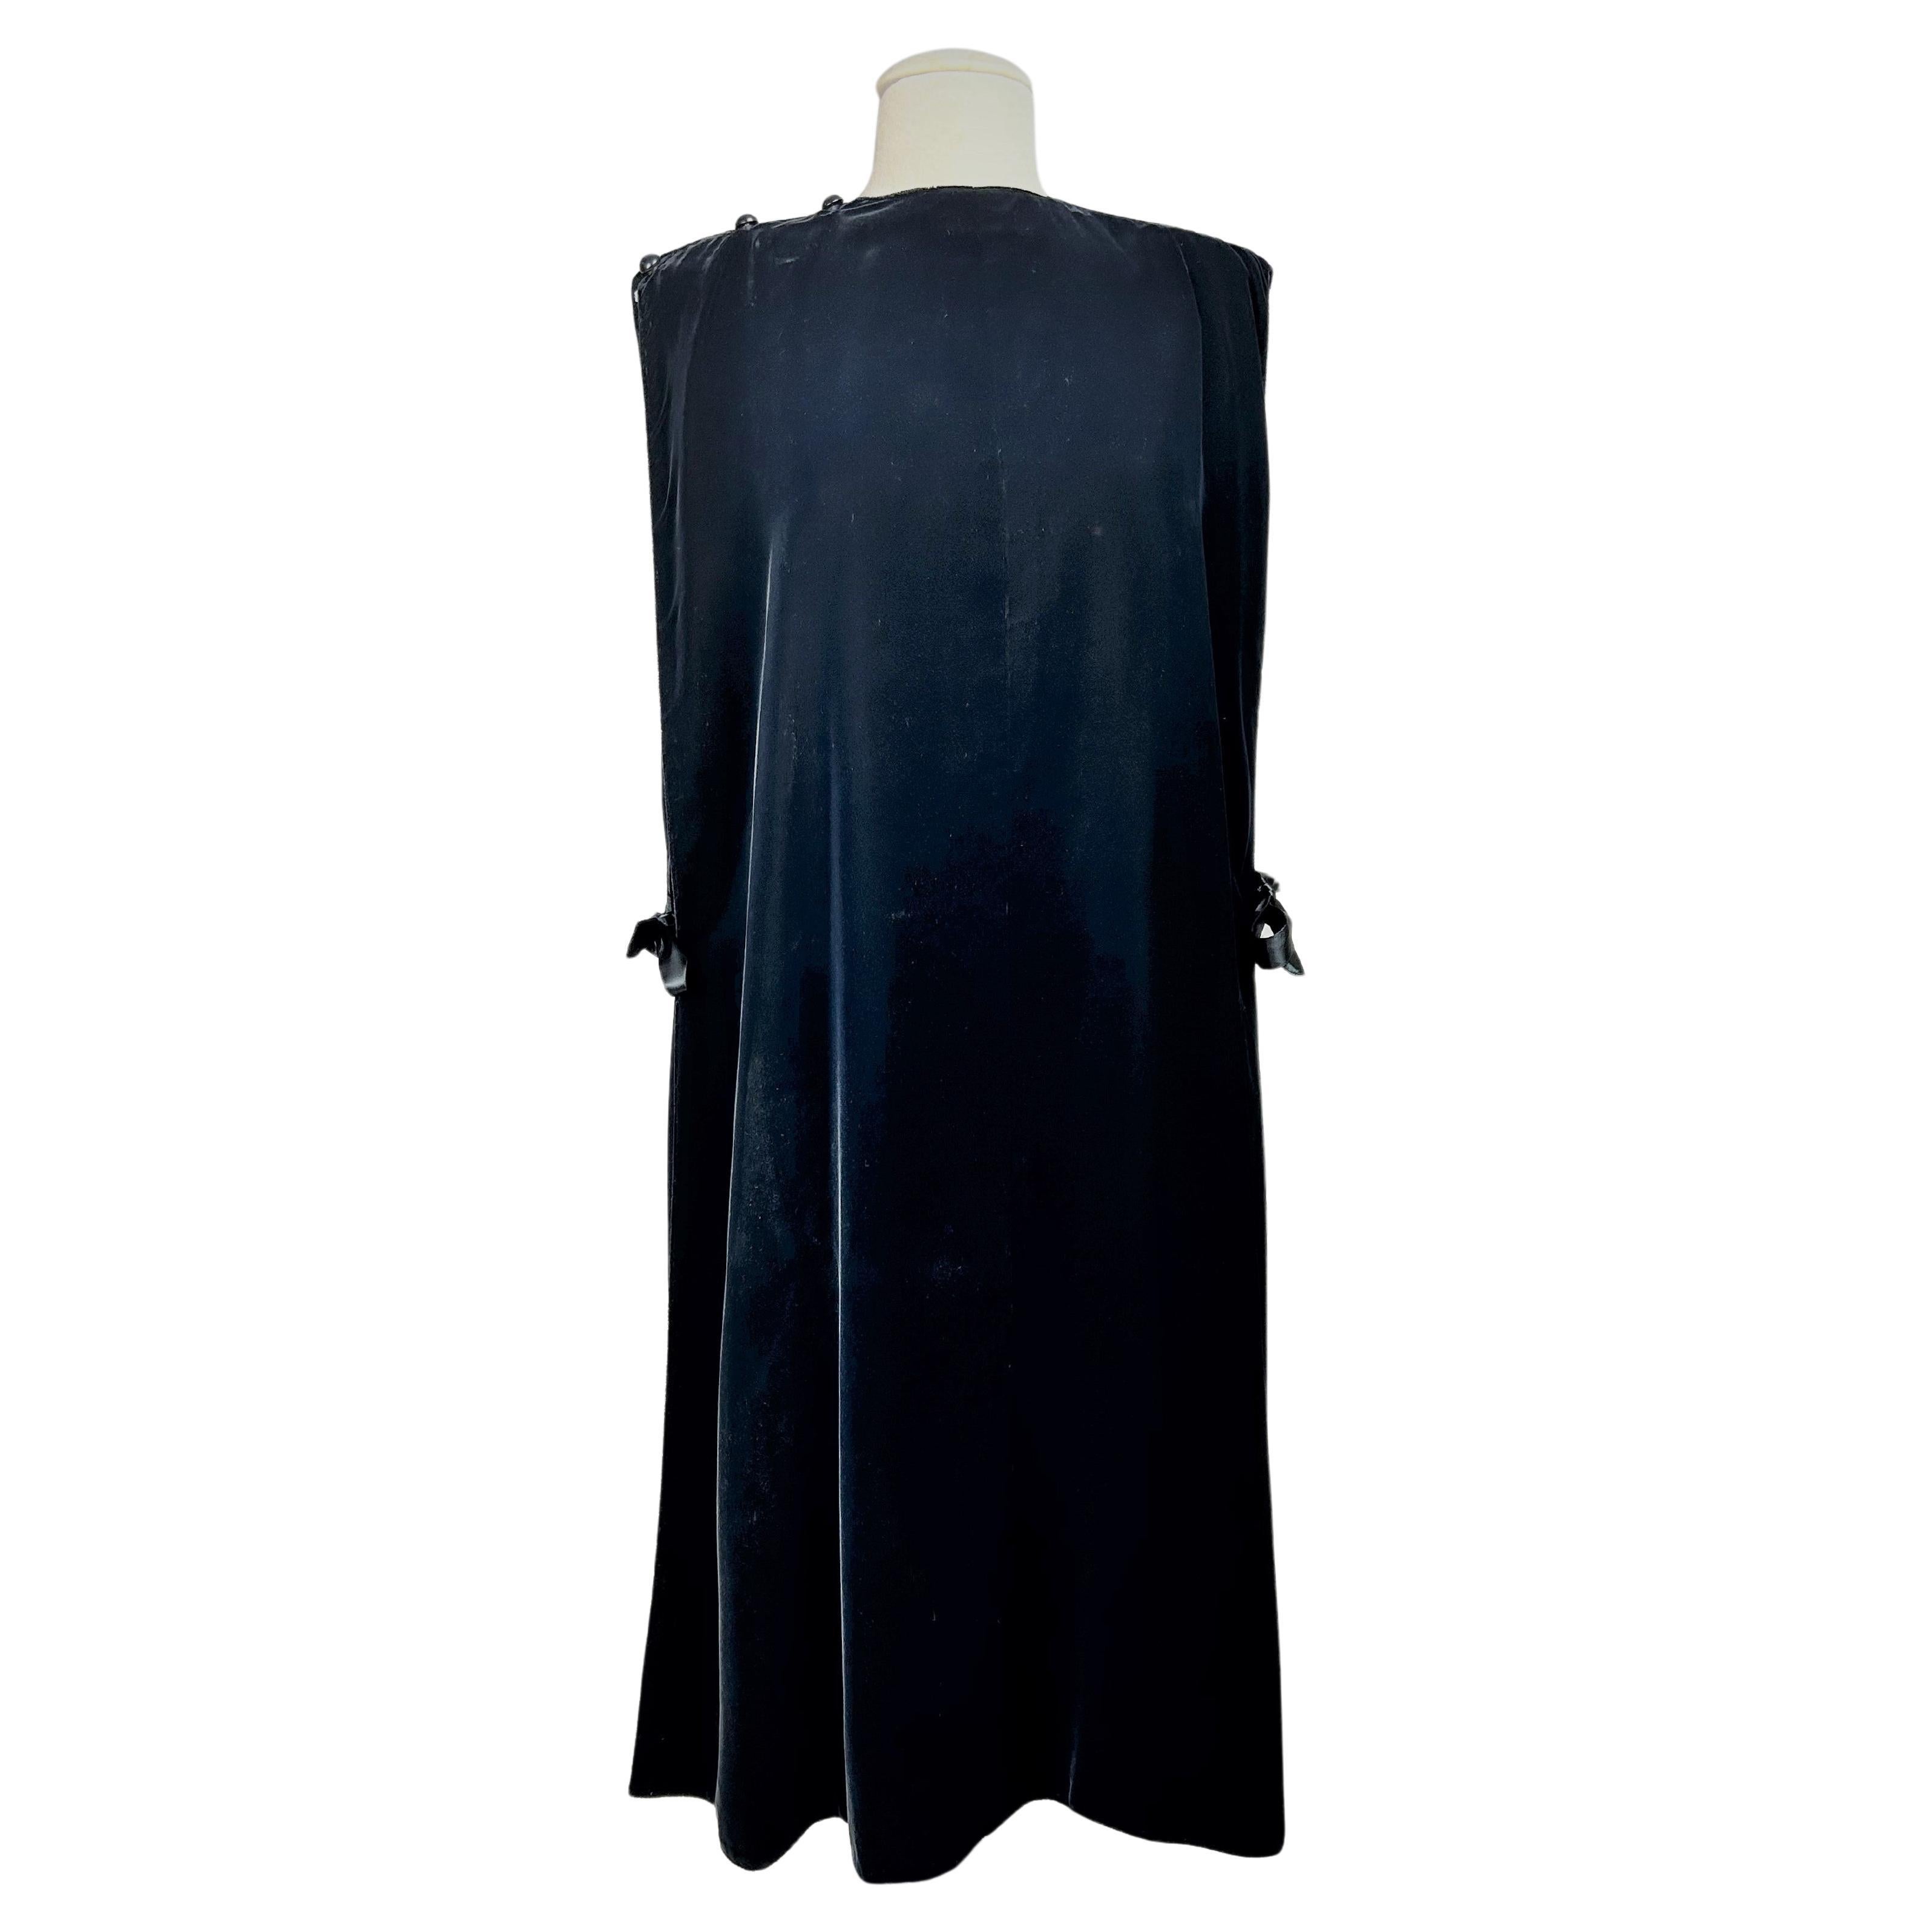 CIRCA 1980

Frankreich

Elegantes schwarzes Chasuble-Abendkleid aus Seidensamt von Madame Grès Haute Couture (zugeschrieben) aus den 1980er Jahren. Minimalistisches Messgewand mit zwei großen dreieckigen Bahnen, die an einer Schulter geknöpft